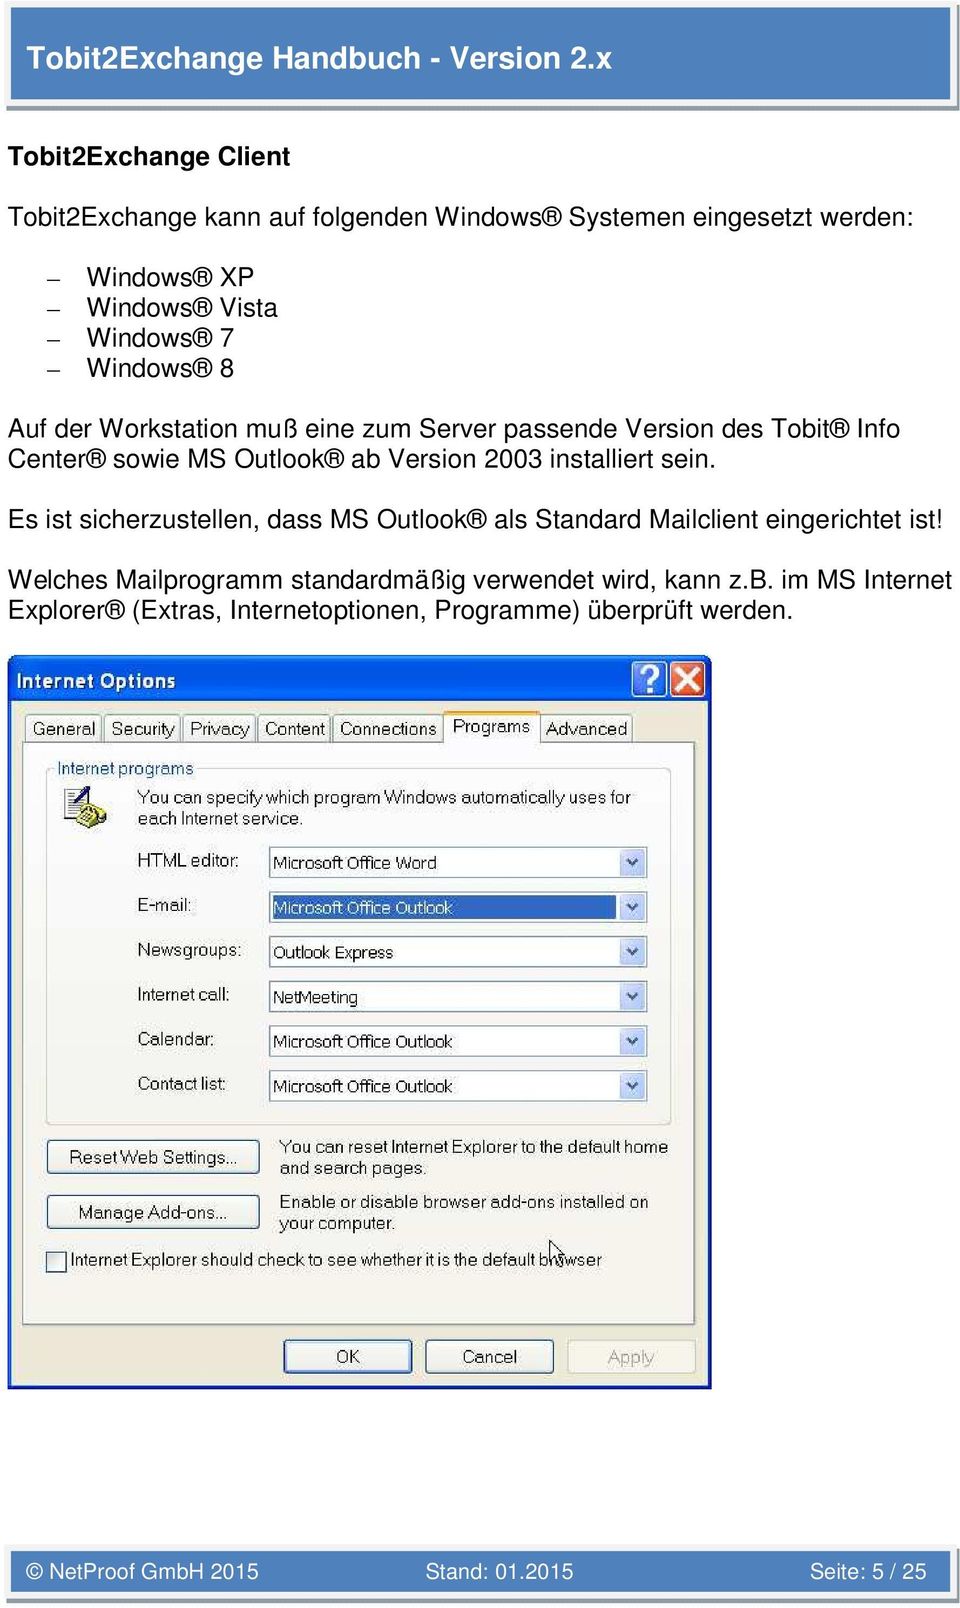 Es ist sicherzustellen, dass MS Outlook als Standard Mailclient eingerichtet ist!